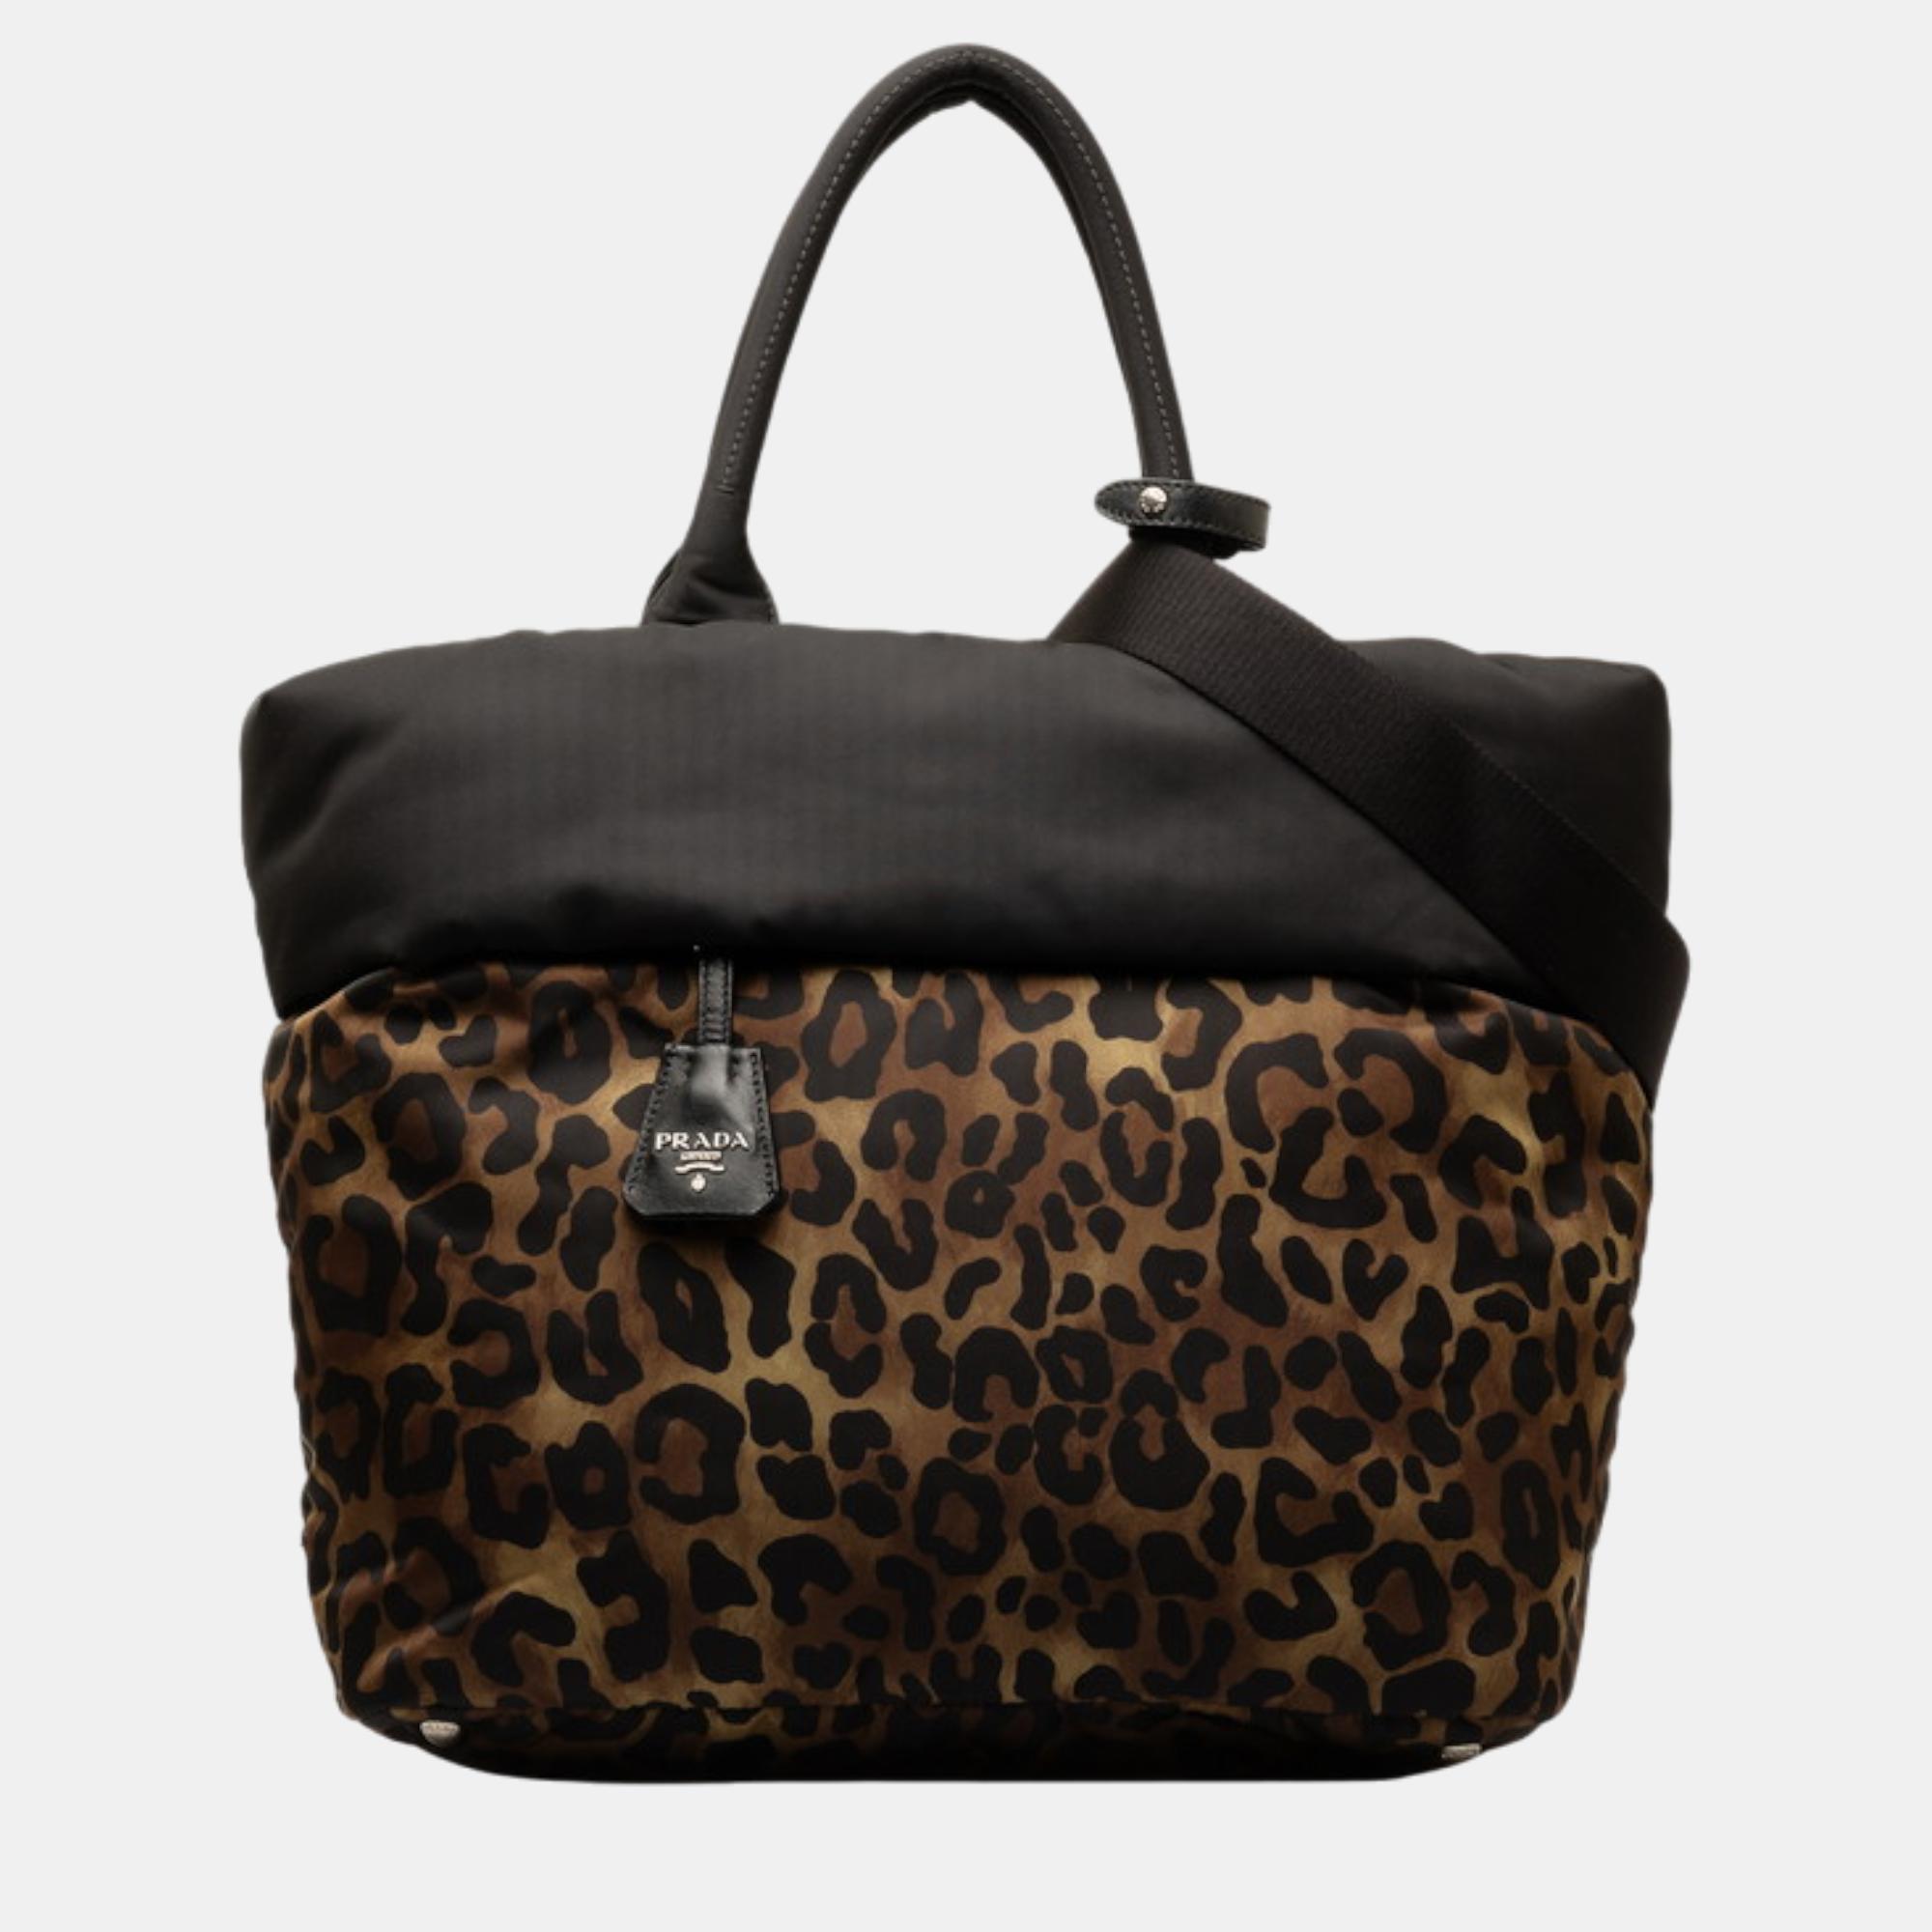 Prada brown/black leopard print tessuto reversible tote bag